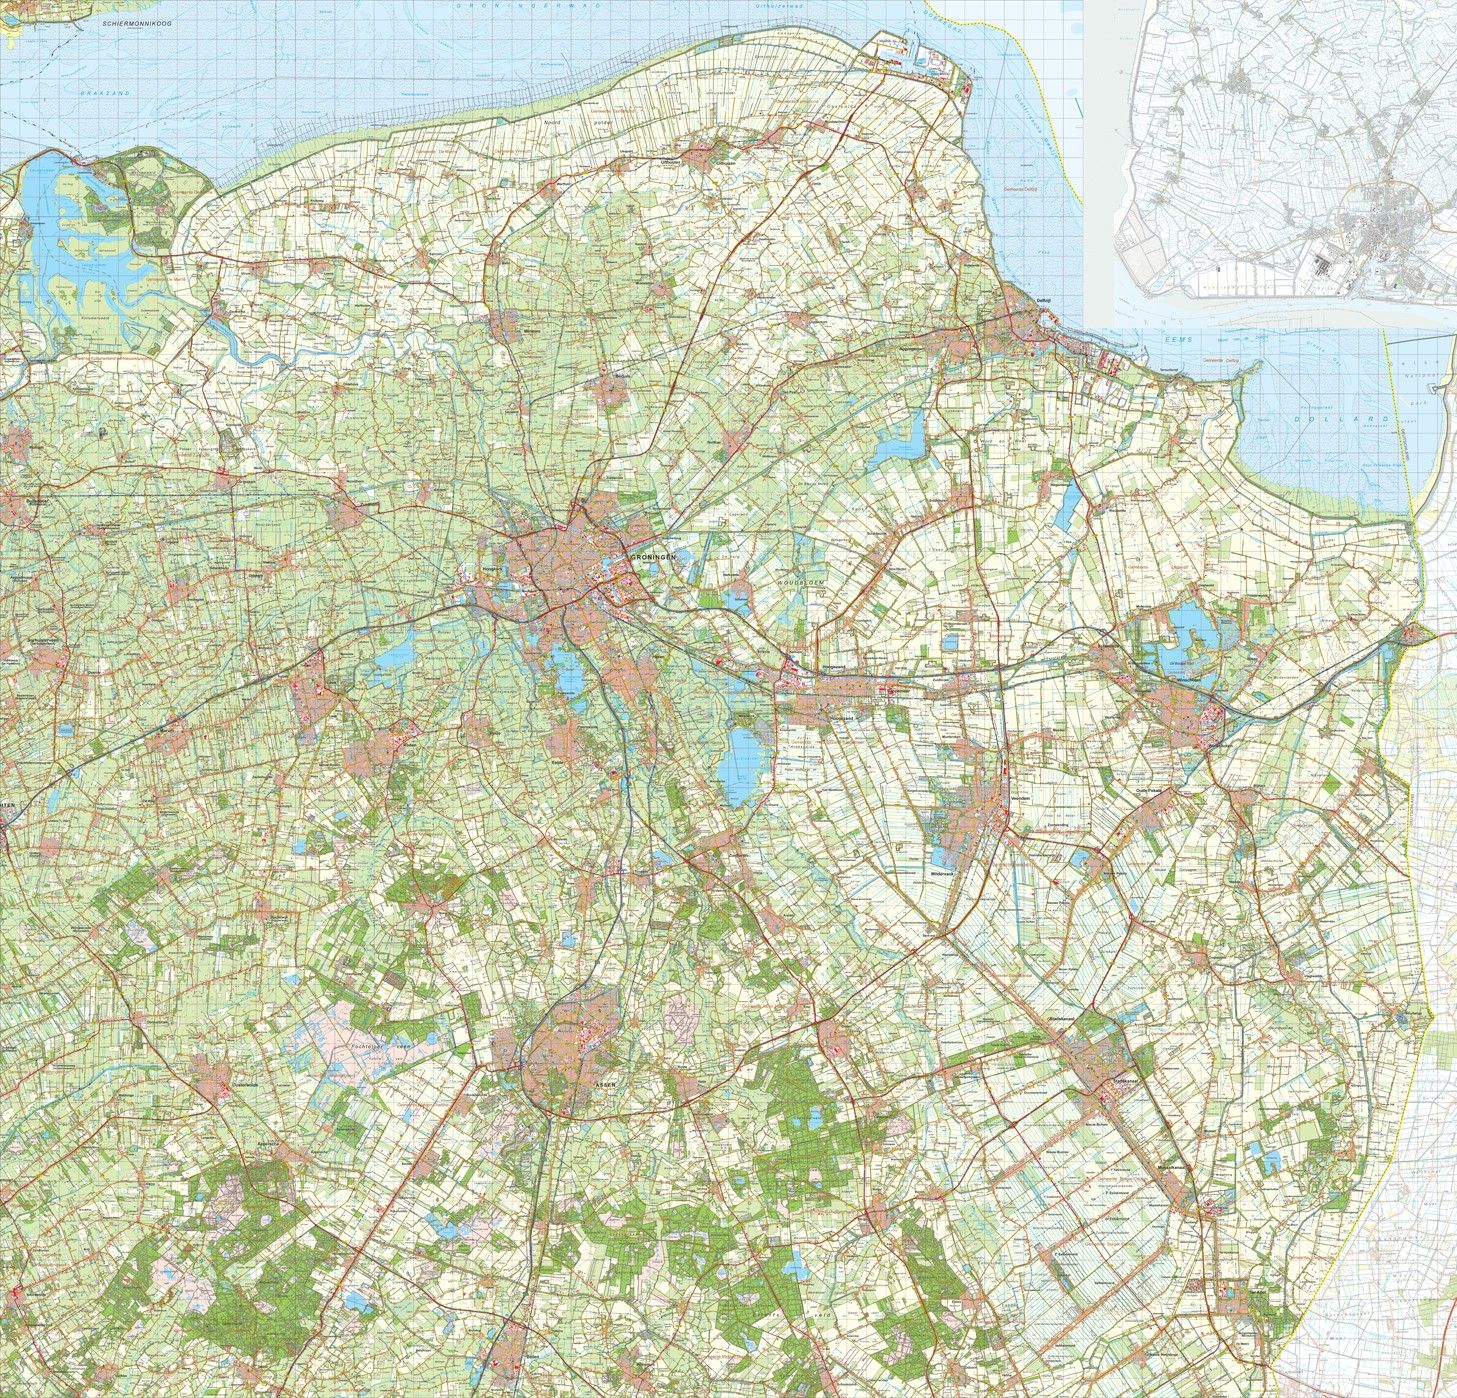 Digitale Provinciekaart Groningen 1:50.000